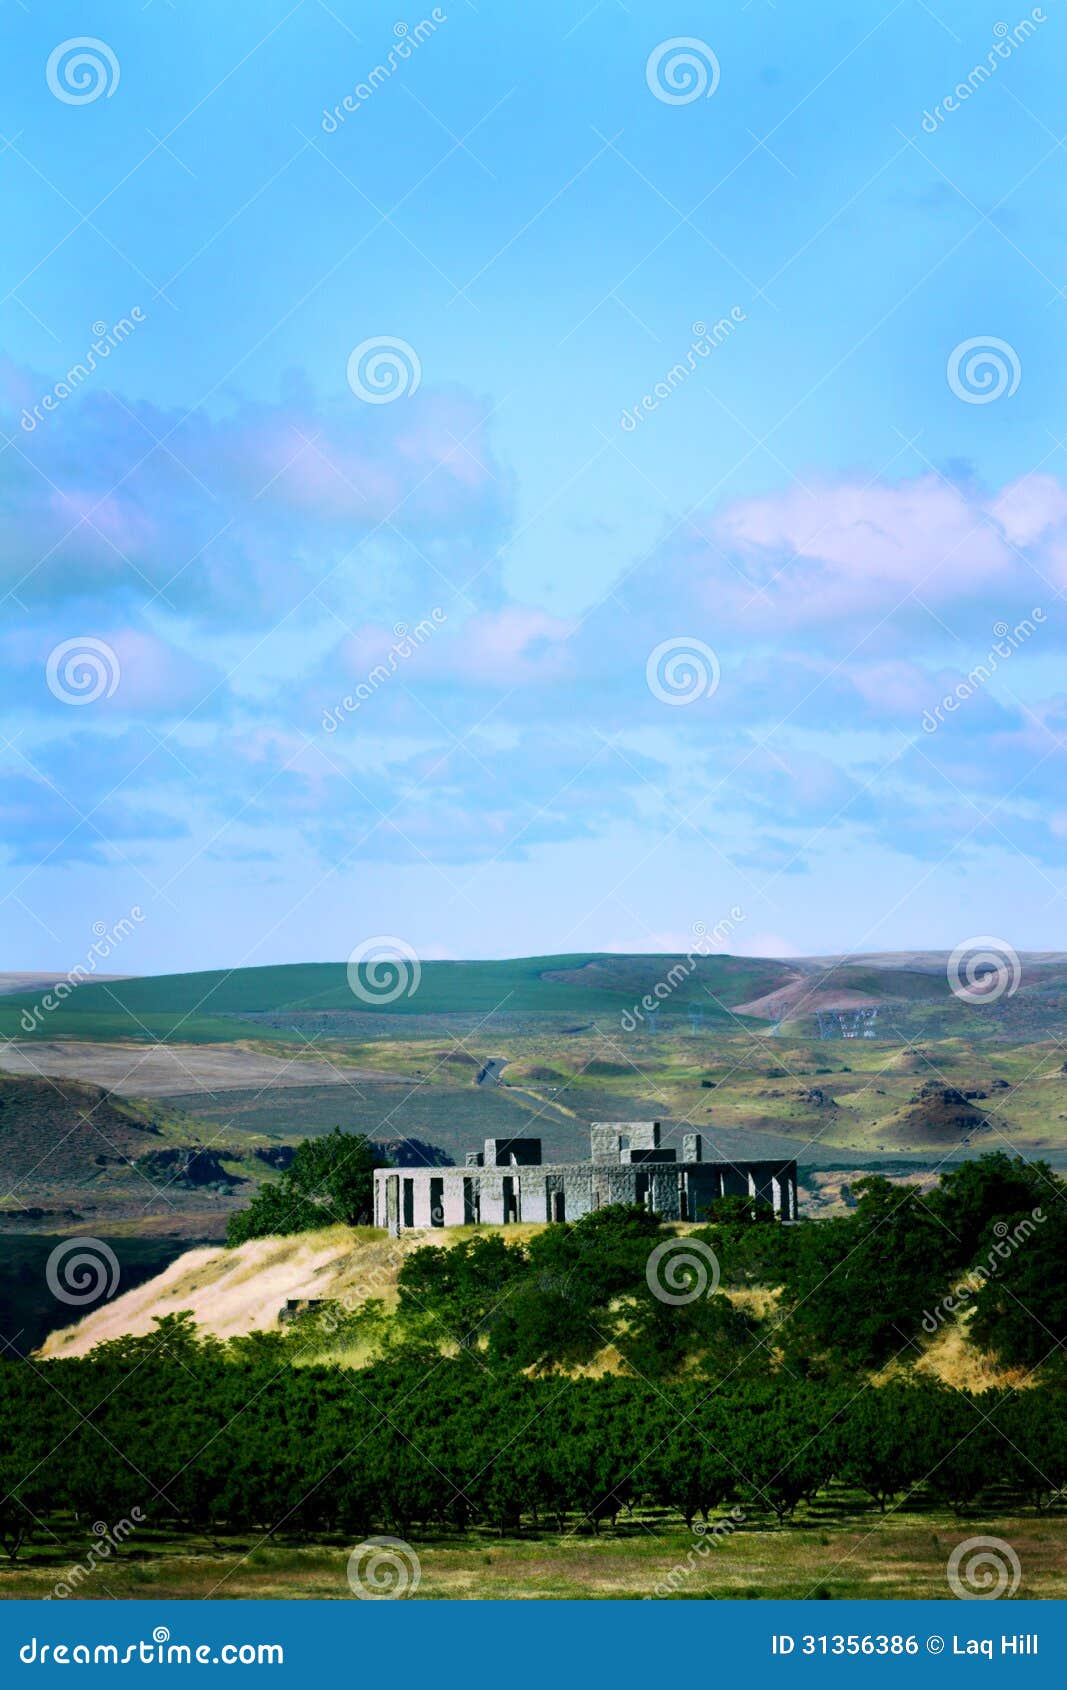 distant view stonehenge replica